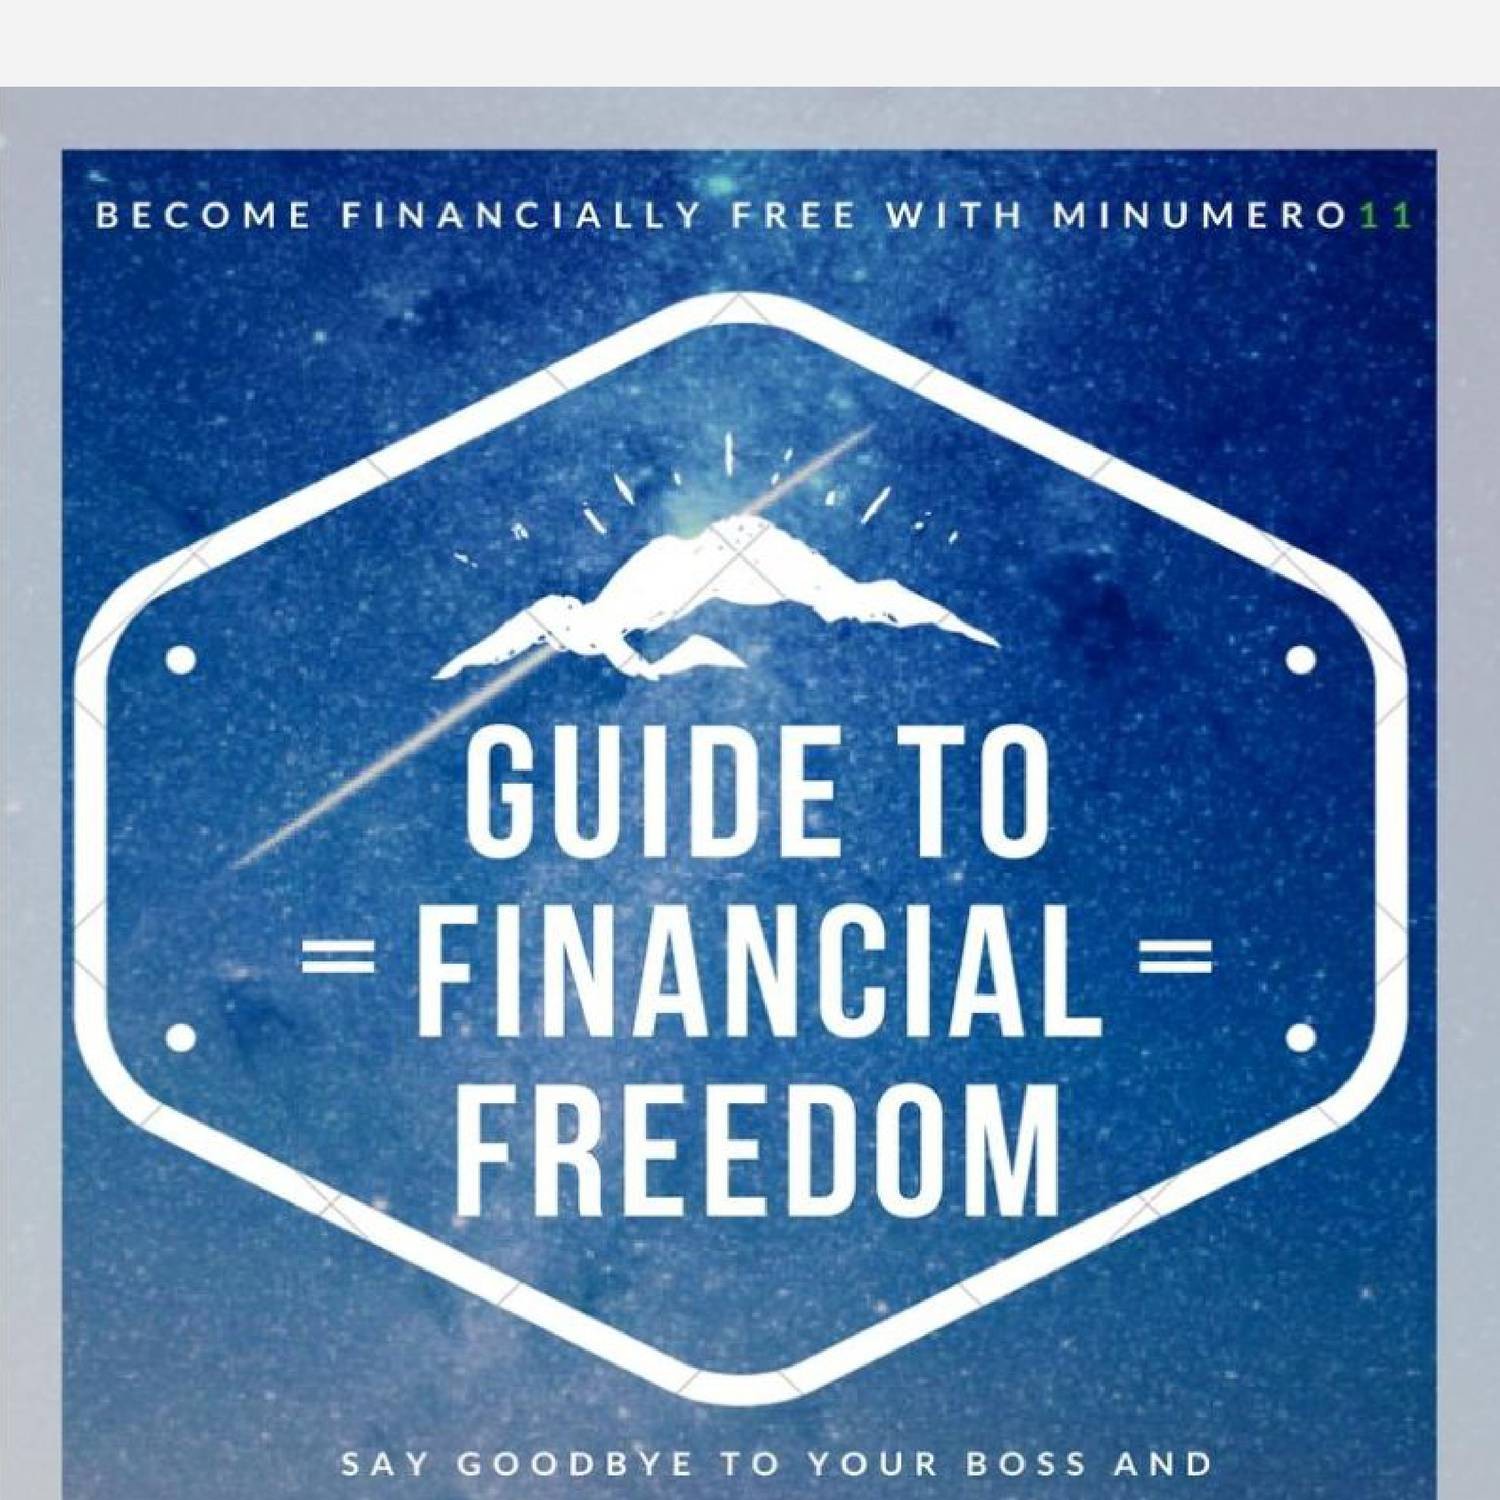 financial freedom synonym